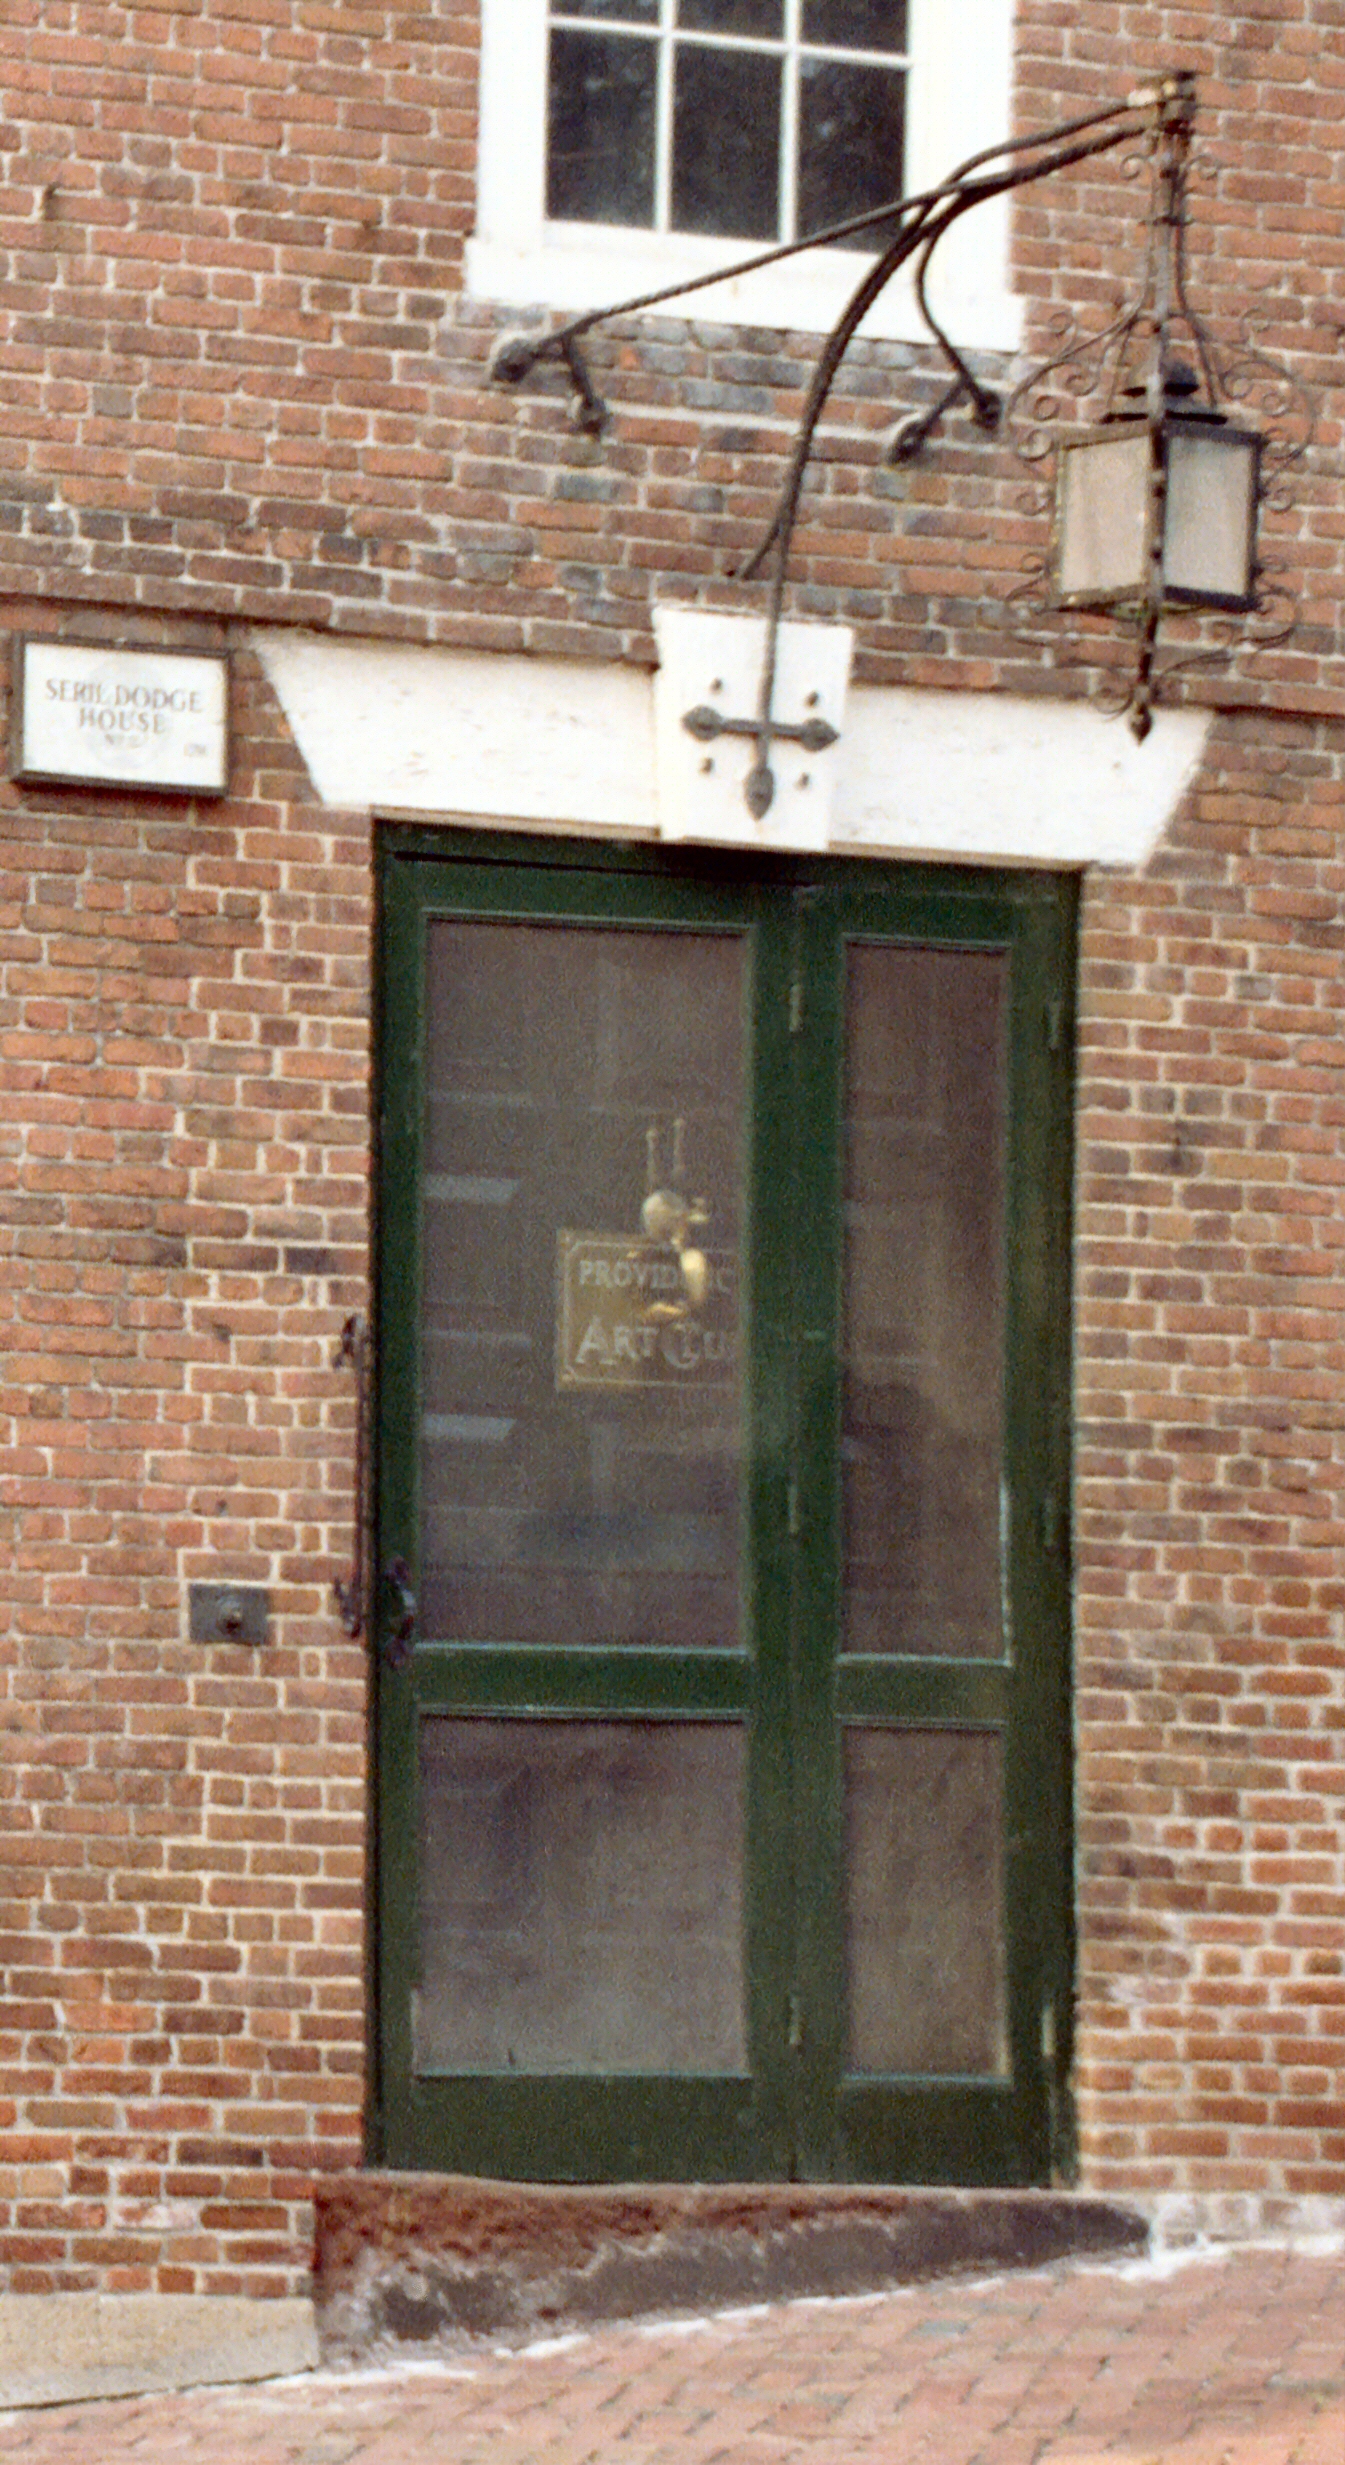 a door in the window of a brick building